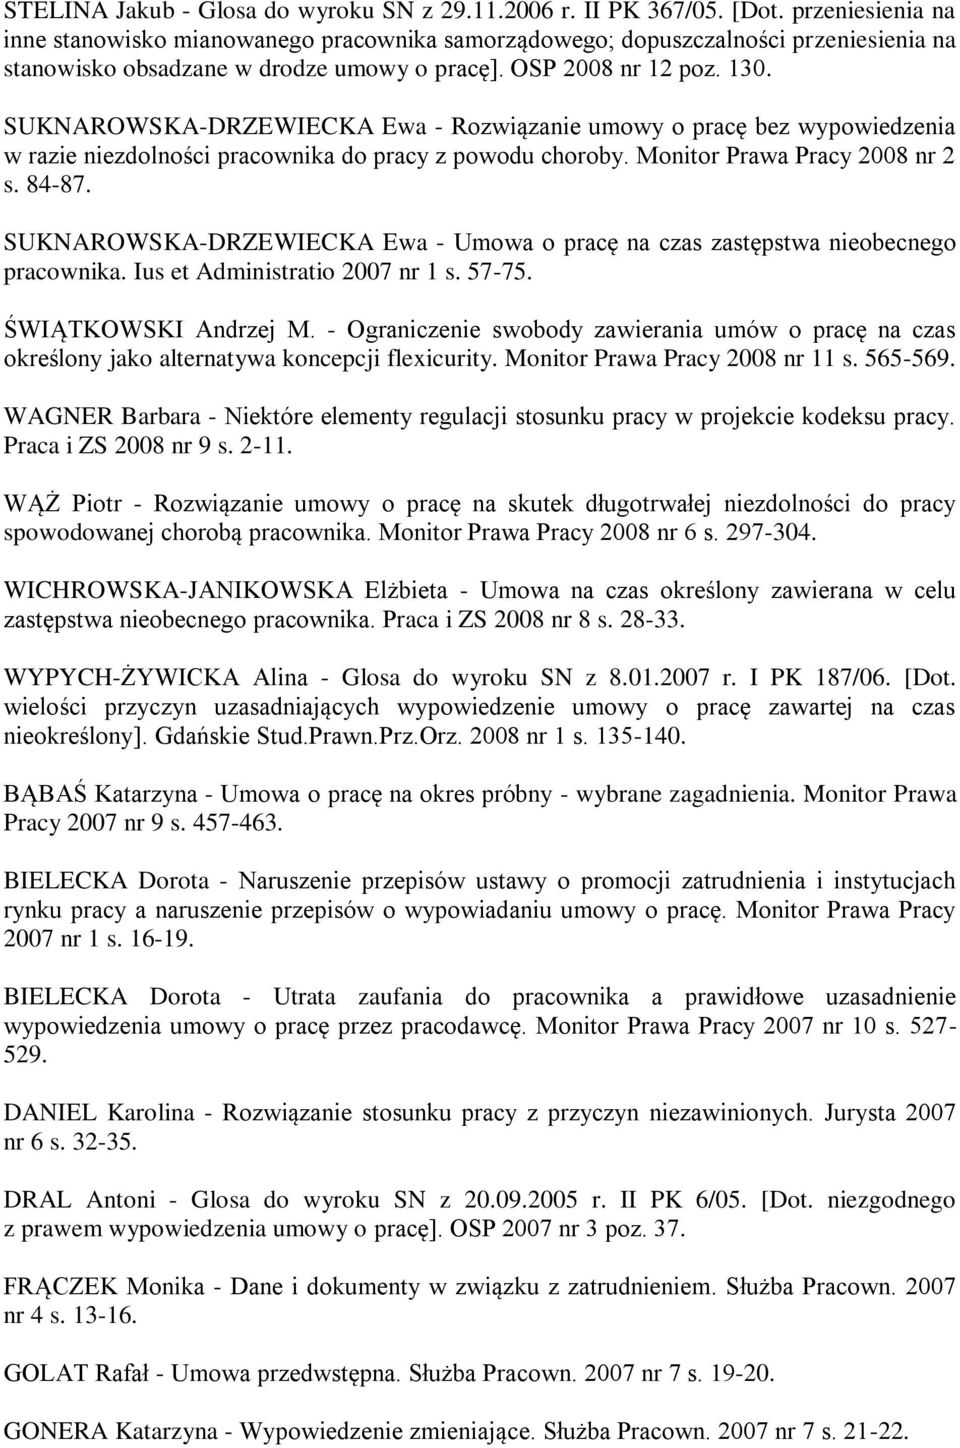 SUKNAROWSKA-DRZEWIECKA Ewa - Rozwiązanie umowy o pracę bez wypowiedzenia w razie niezdolności pracownika do pracy z powodu choroby. Monitor Prawa Pracy 2008 nr 2 s. 84-87.